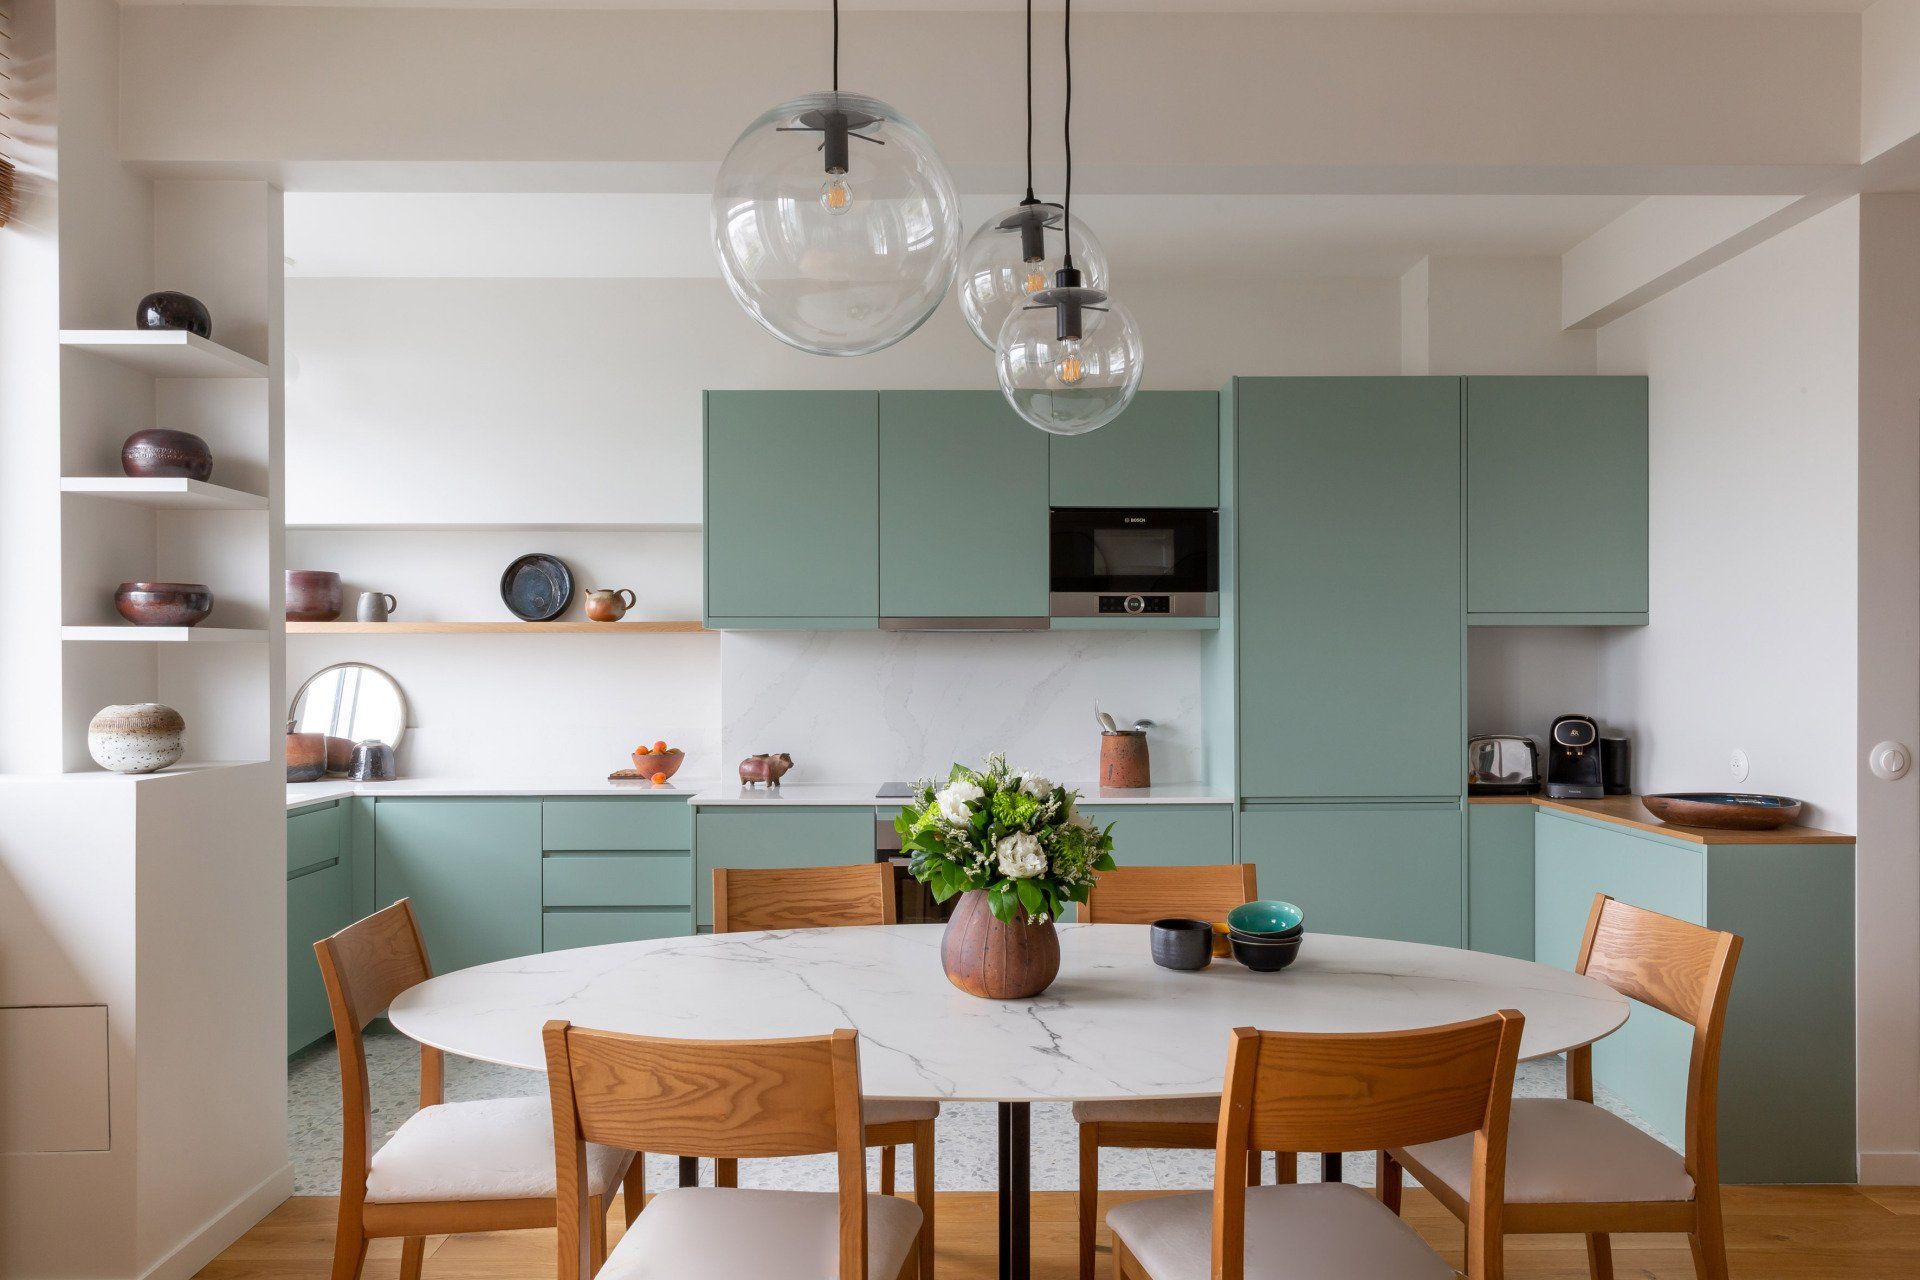 AXIOME Interior Design, architecte d'intérieur paris, salon, canapé jaune moutarde, cuisine verte, green kitchen, Terrazzo